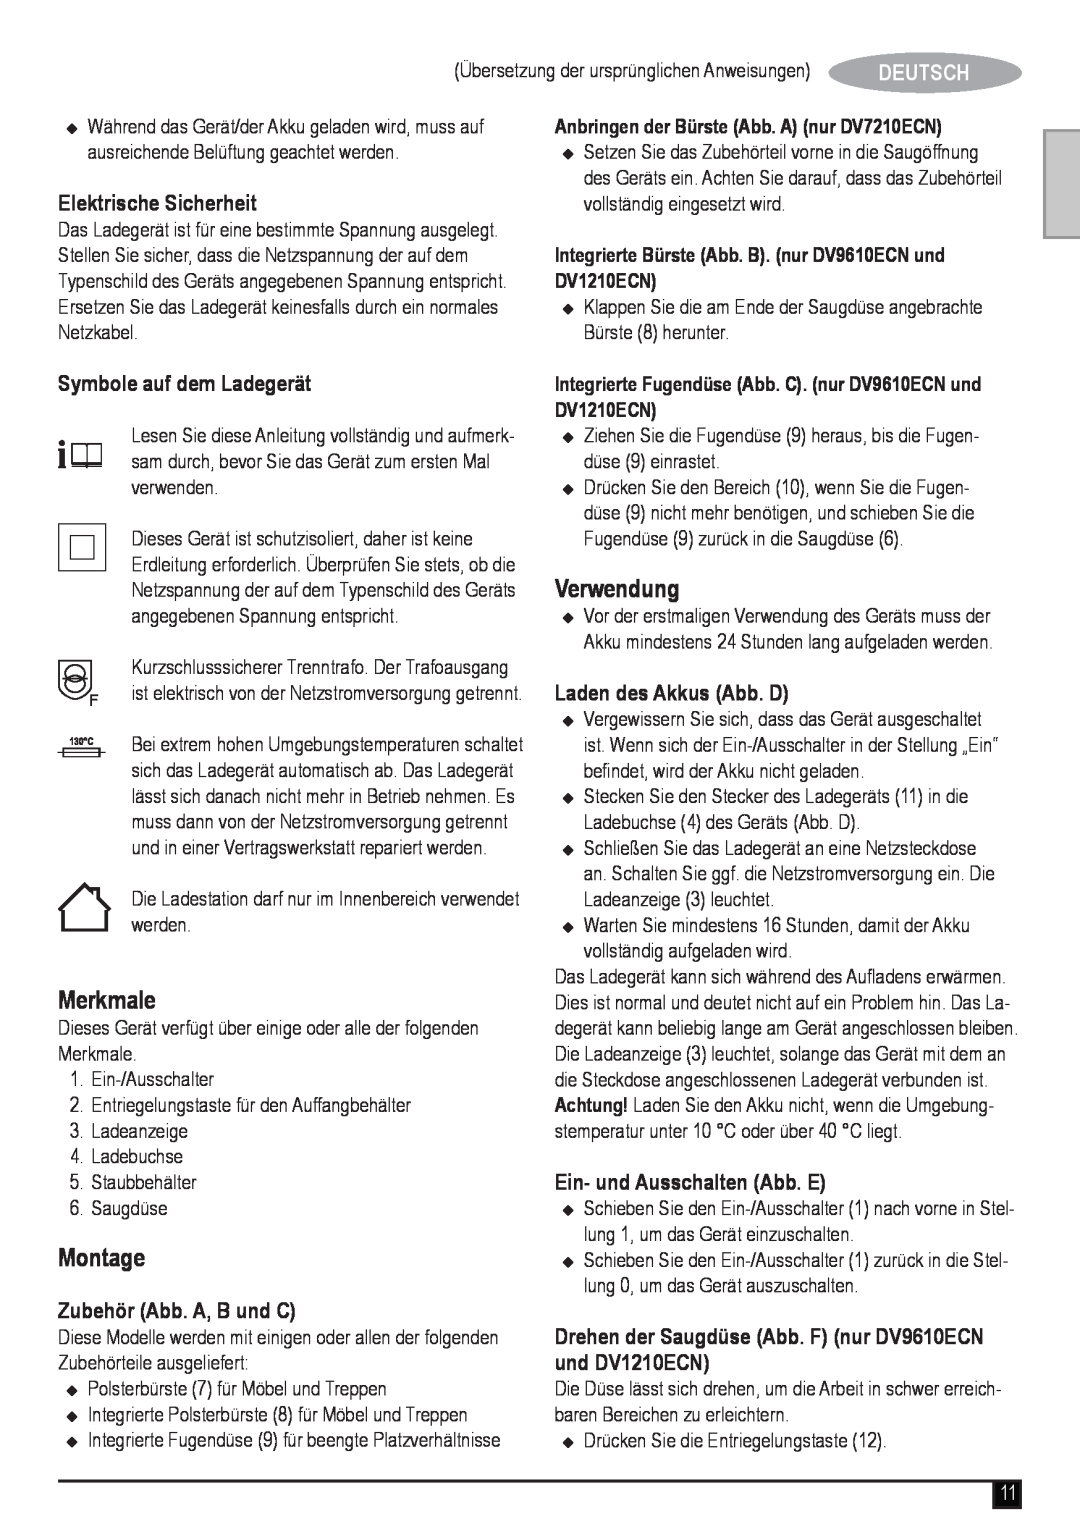 Black & Decker DV1210ECN manual Merkmale, Montage, Verwendung, Deutsch, Elektrische Sicherheit, Symbole auf dem Ladegerät 